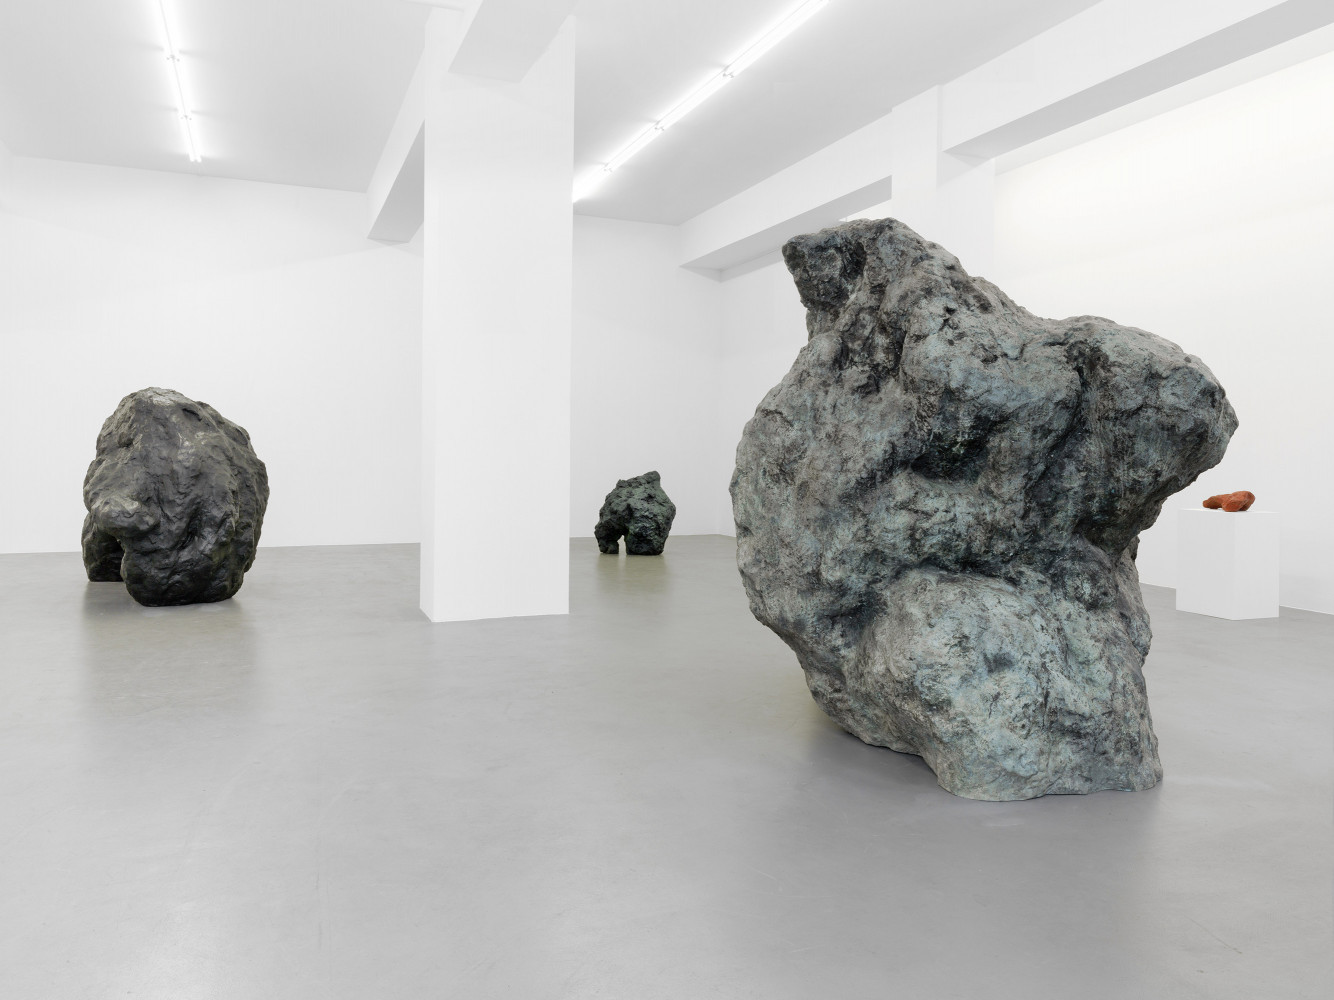 William Tucker, ‘Skulptur’, Installation view, Buchmann Galerie, 2015